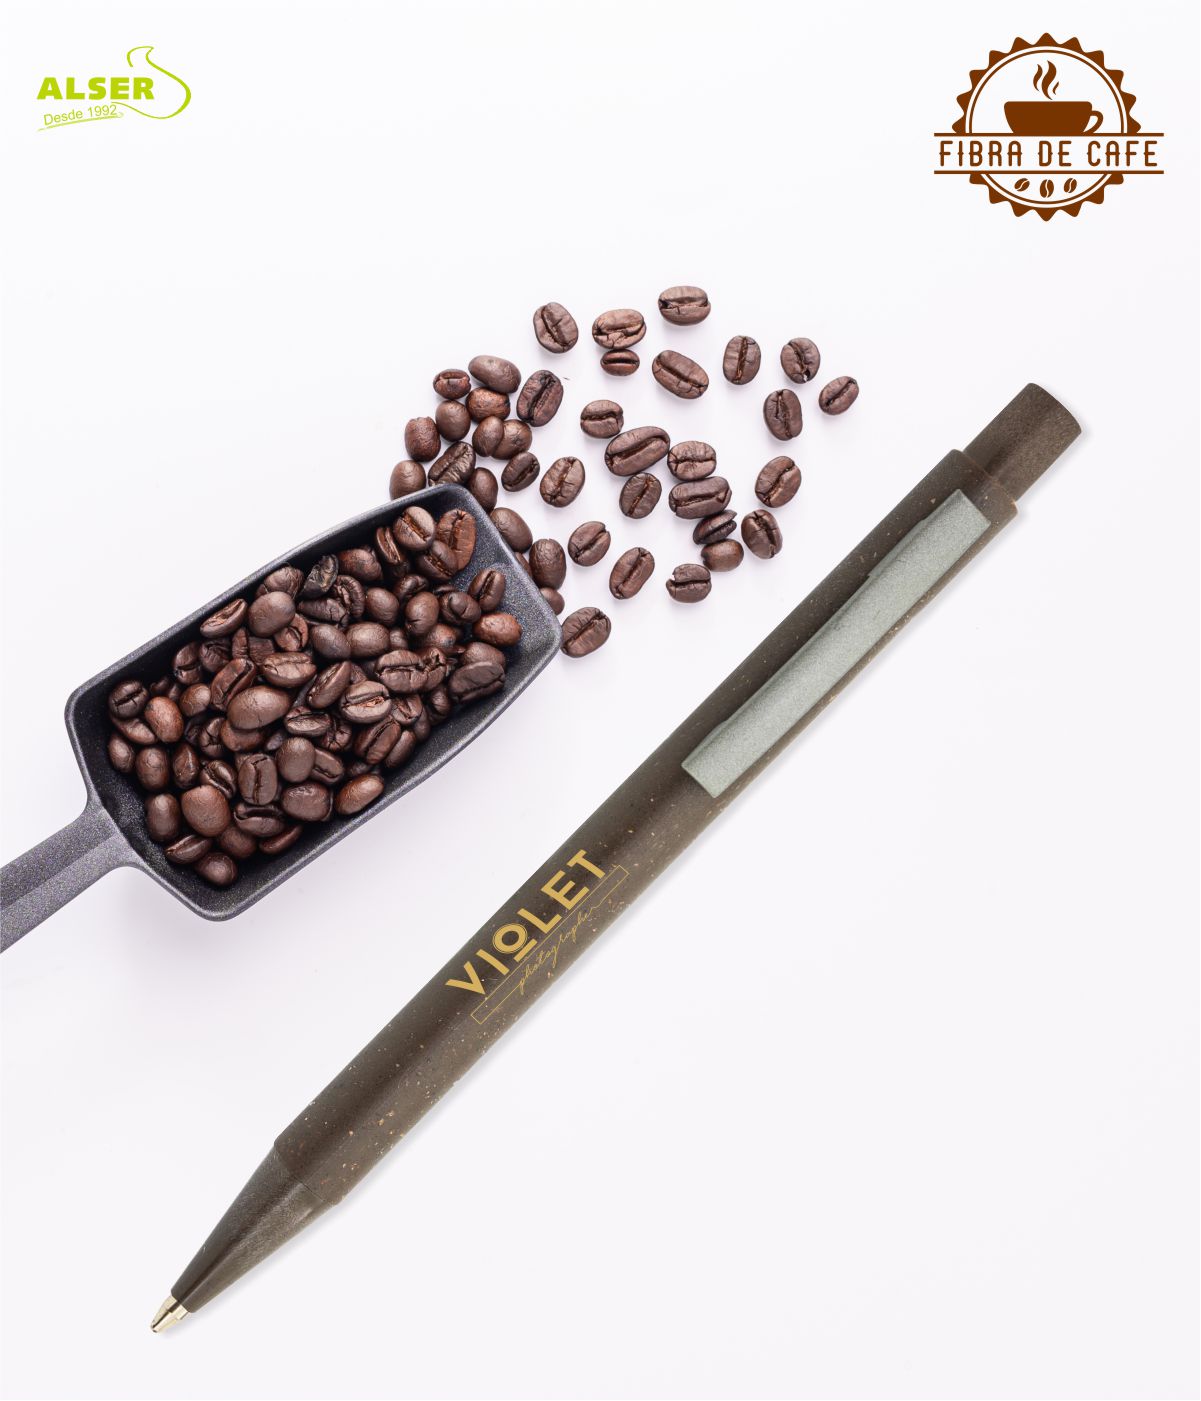 Boligrafo de fibra de cafe con logo